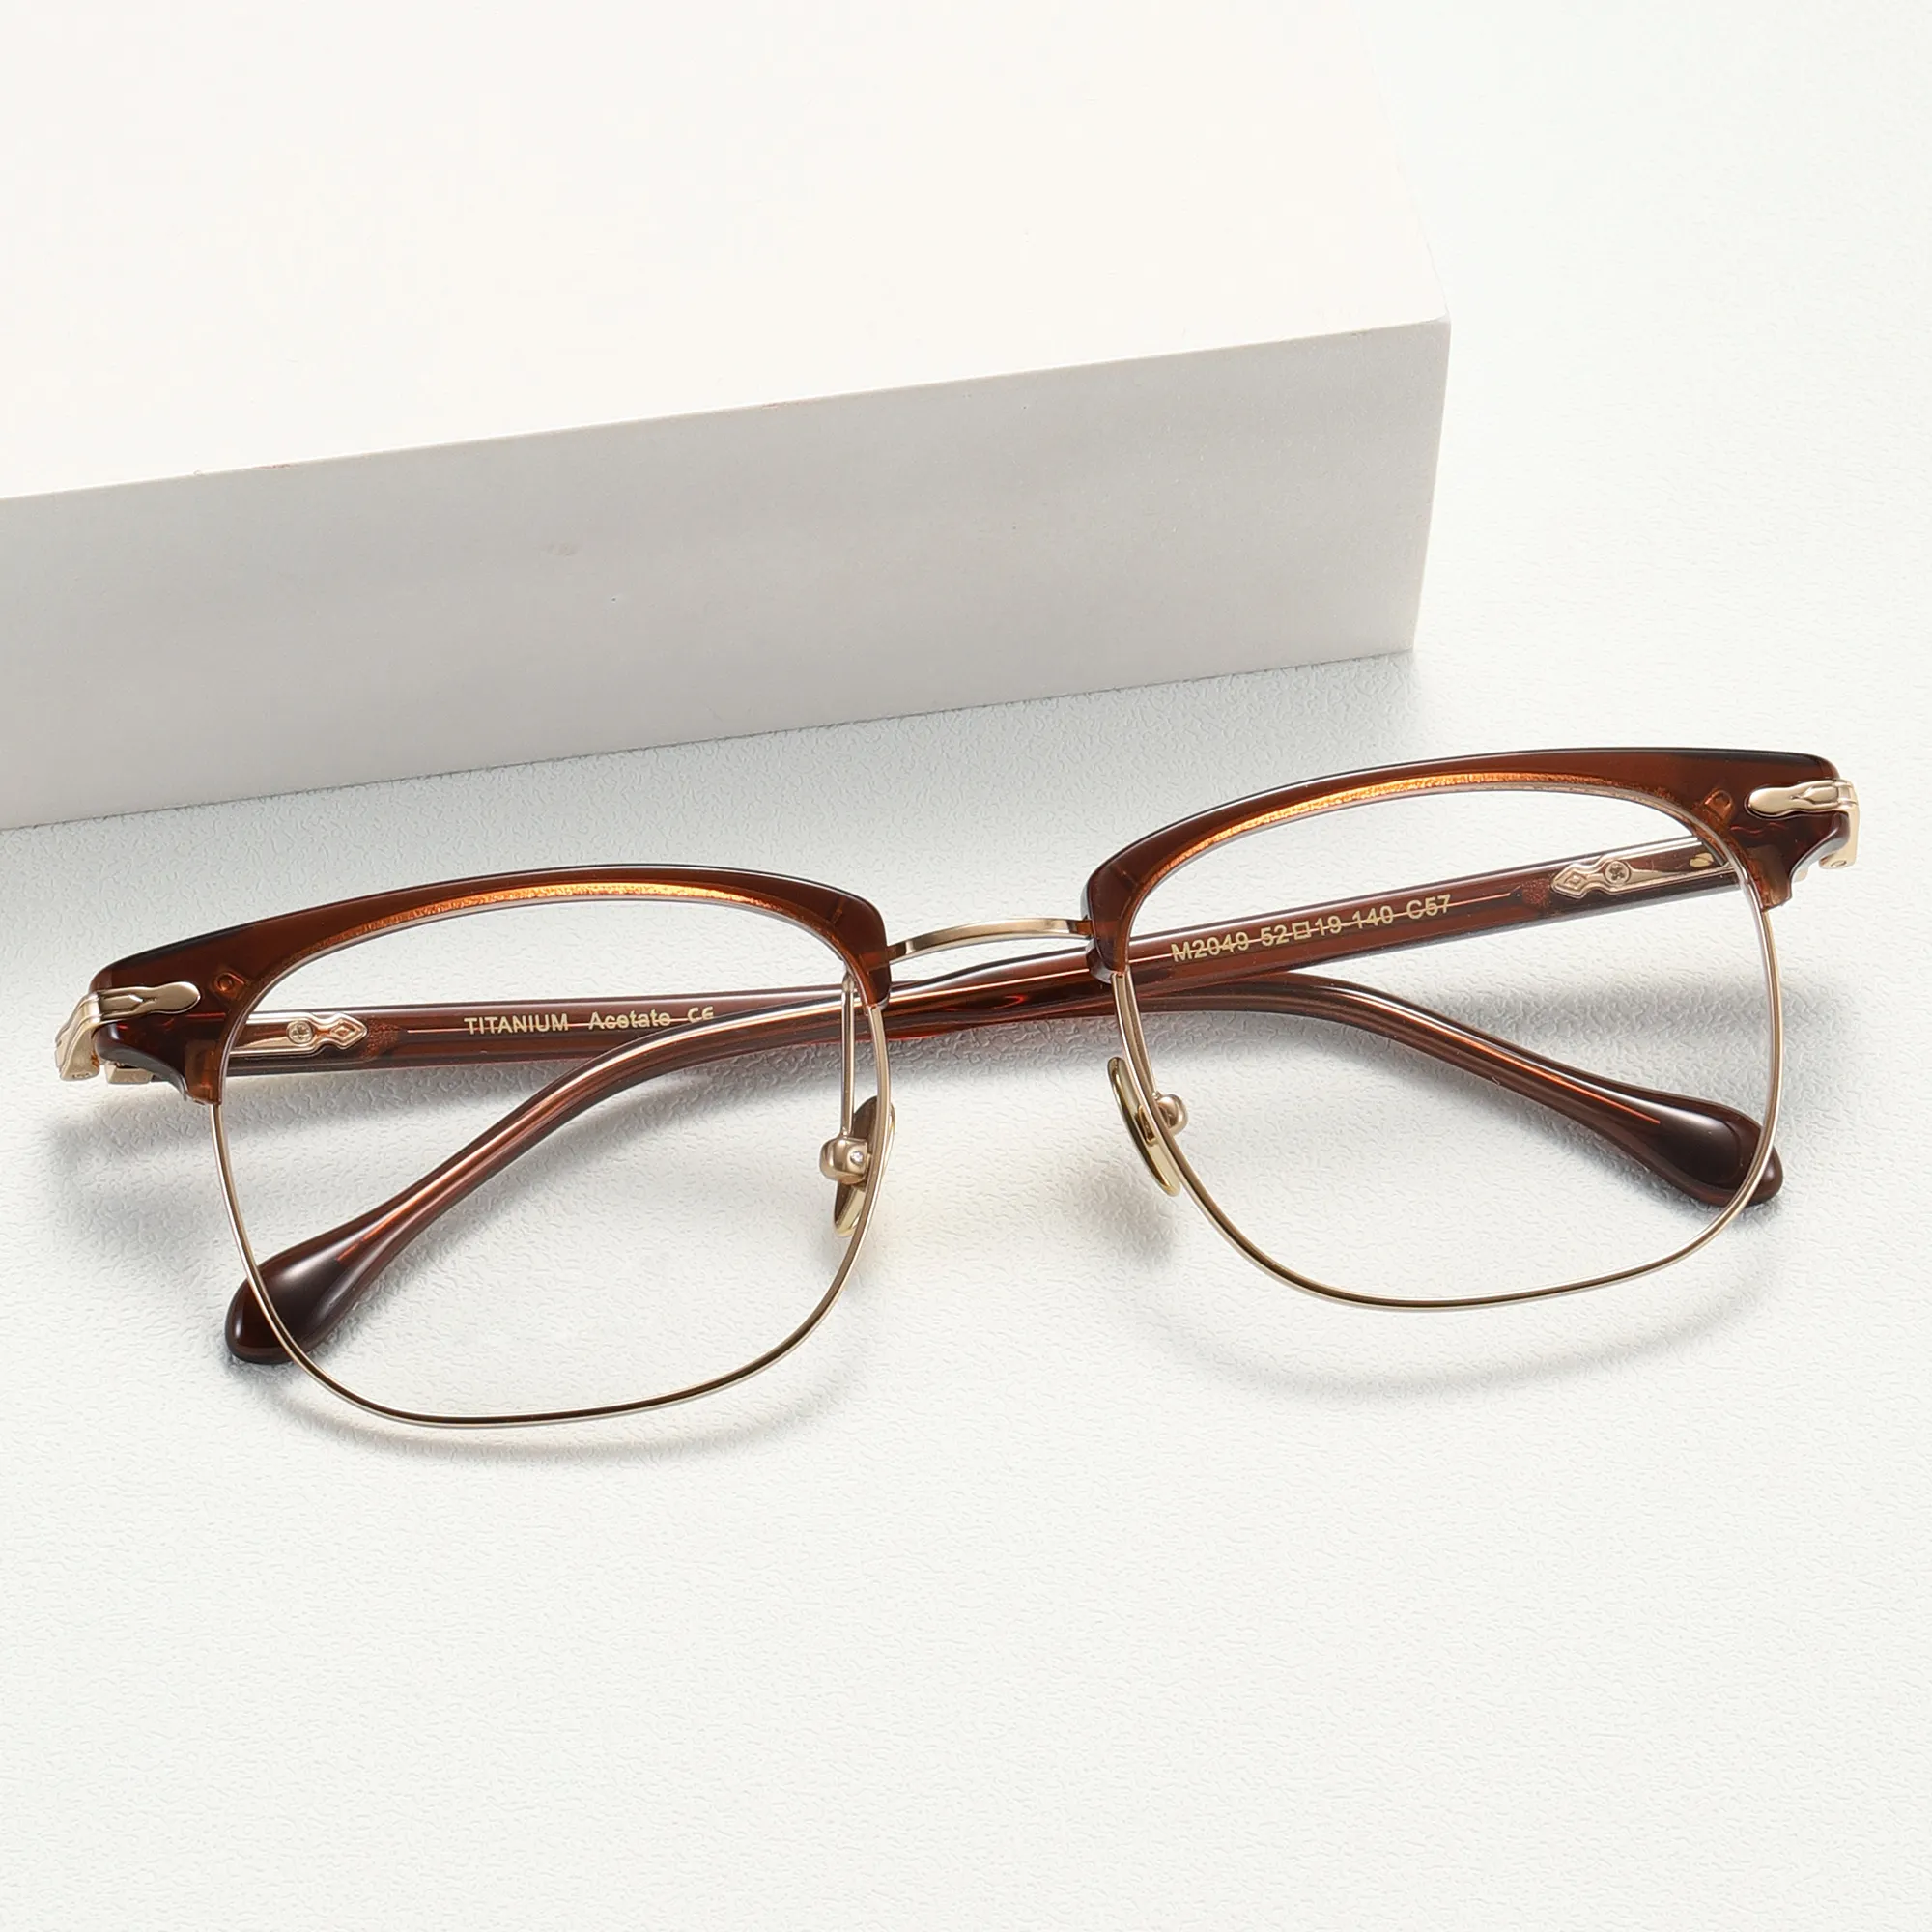 Figroad Nieuwste Ontwerp Eye Wear Metalen Half Frame Mode Bril Bril Klassieke Metalen Frame Brillen Mannen In Voorraad